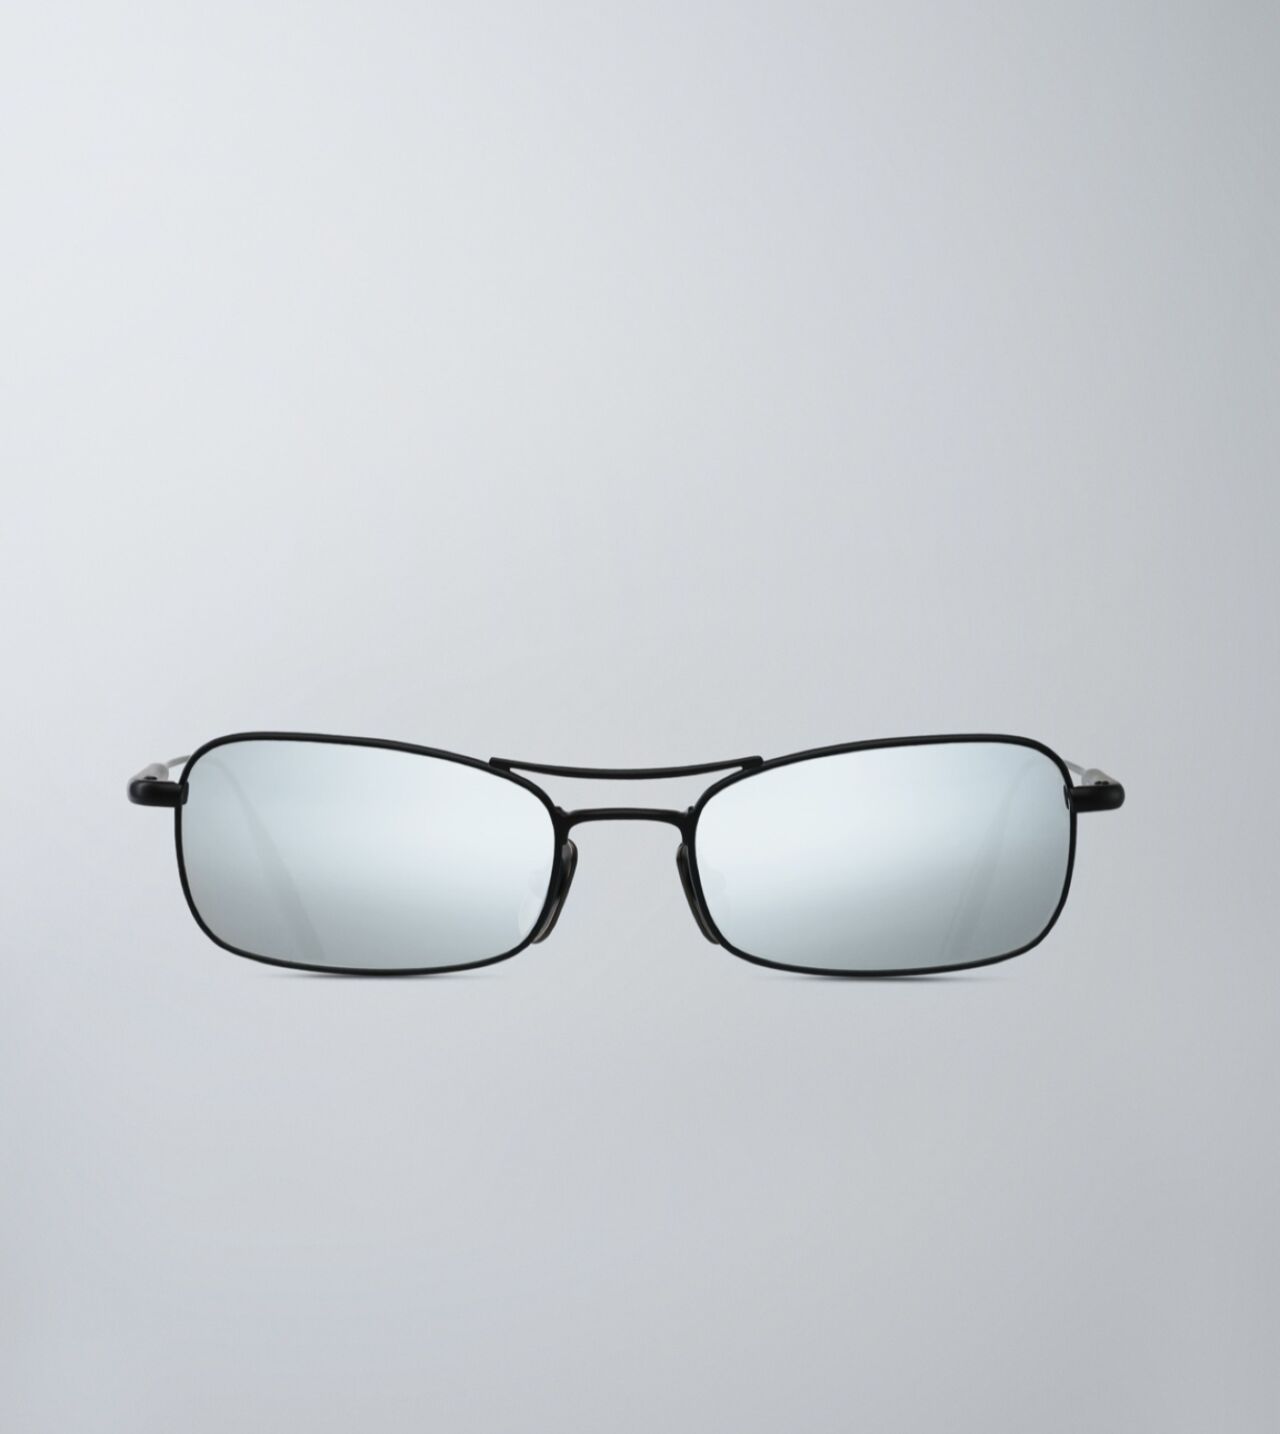 Takenaka Sunglasses in Black/Dark Grey